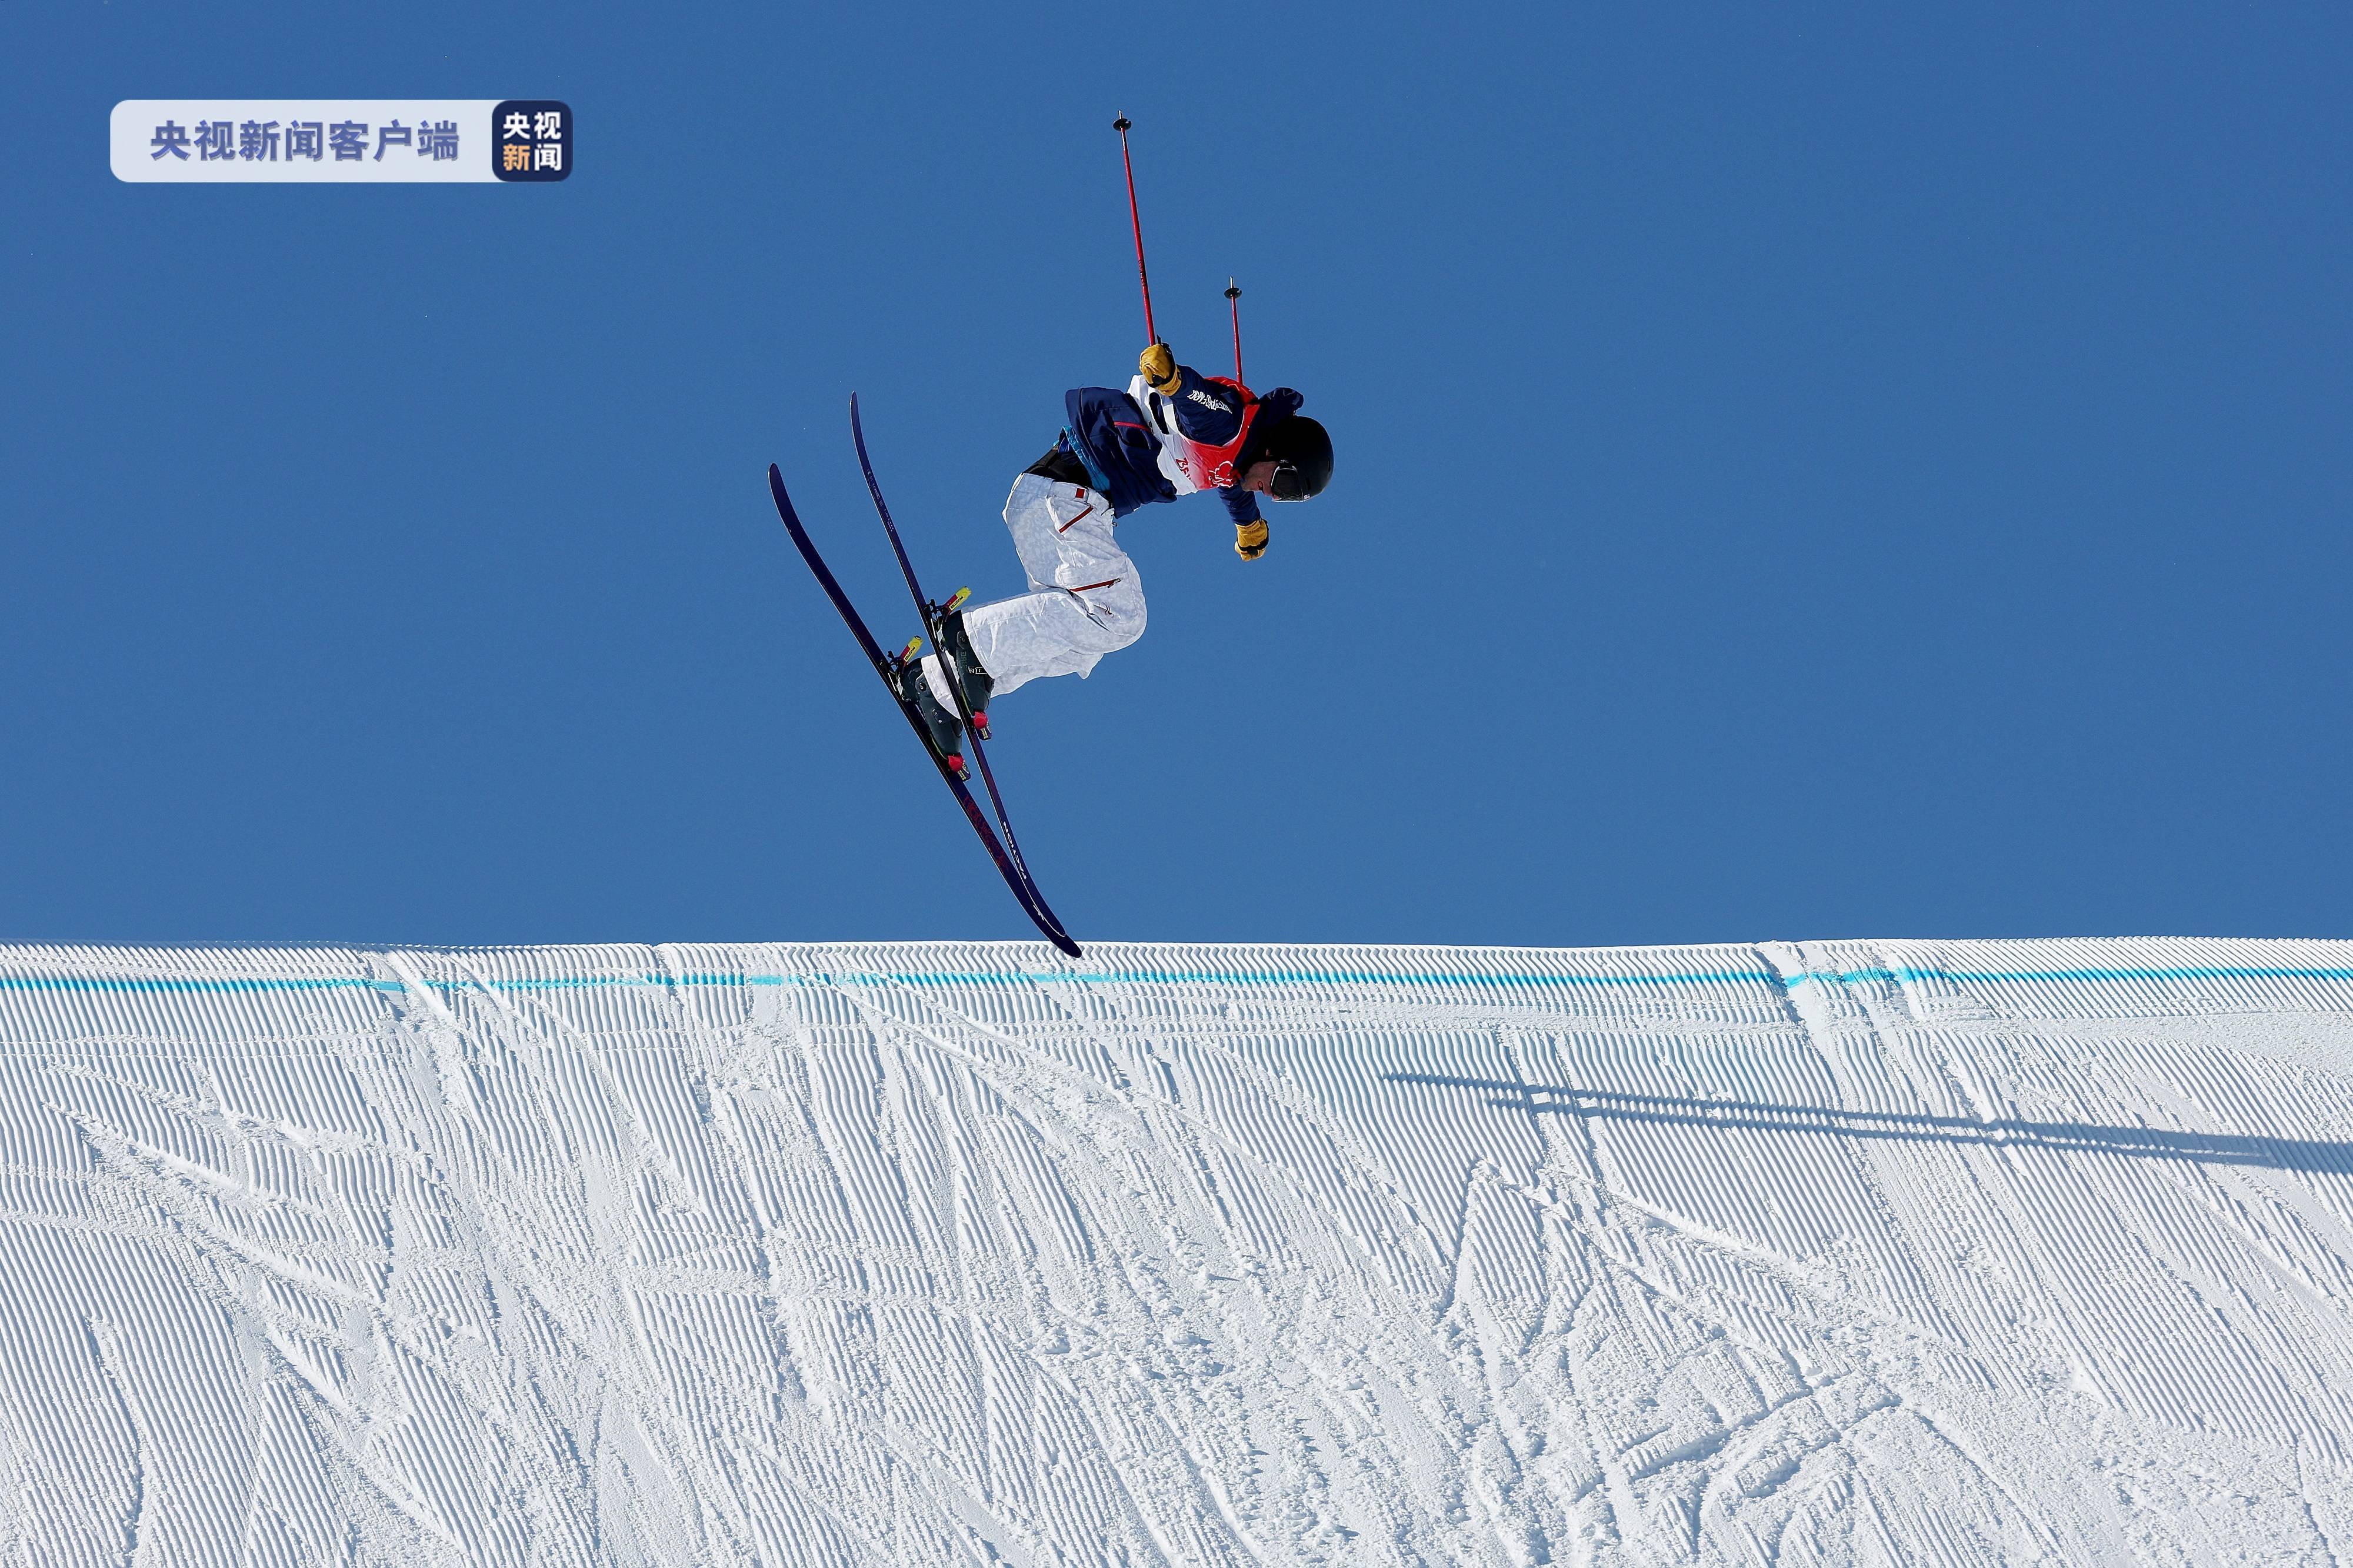 亚历山大·霍尔|美国选手夺得自由式滑雪男子坡面障碍技巧金牌